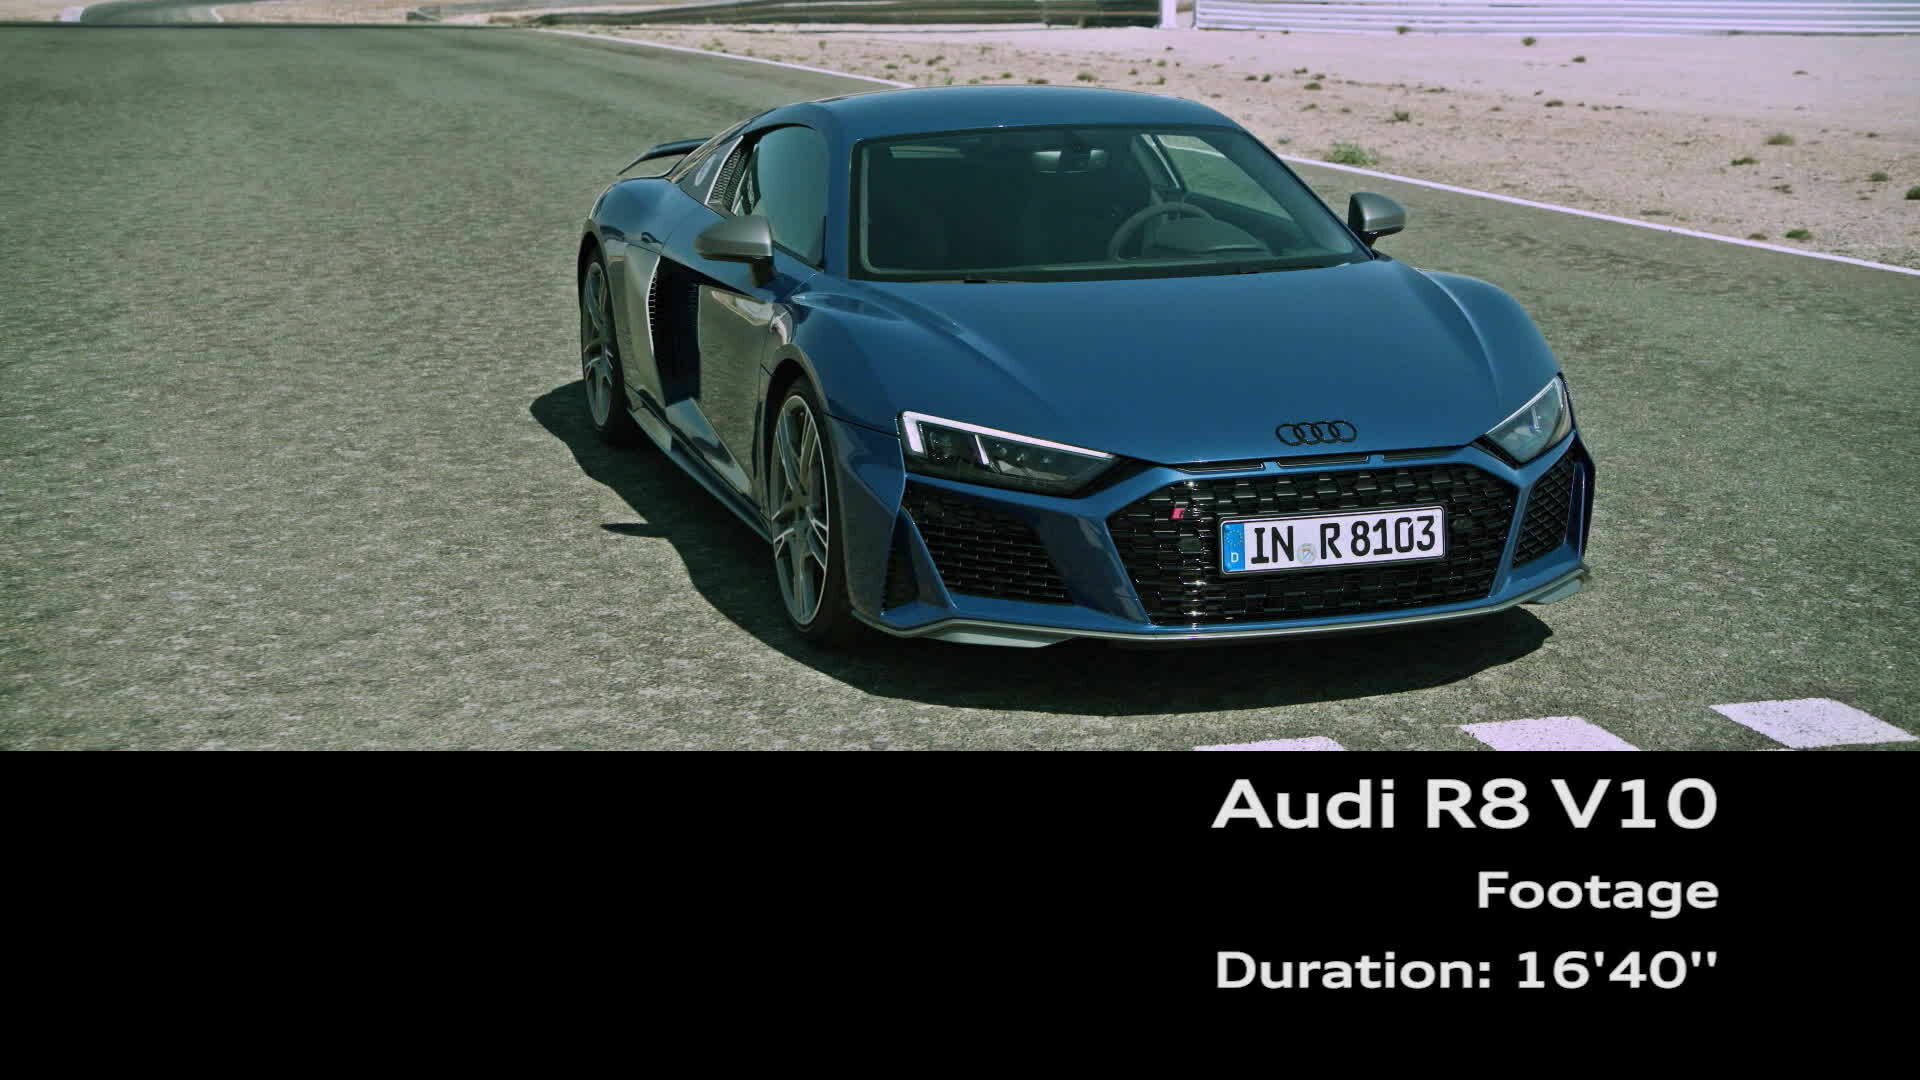 Audi R8 Coupé V10 performance quattro (Footage)